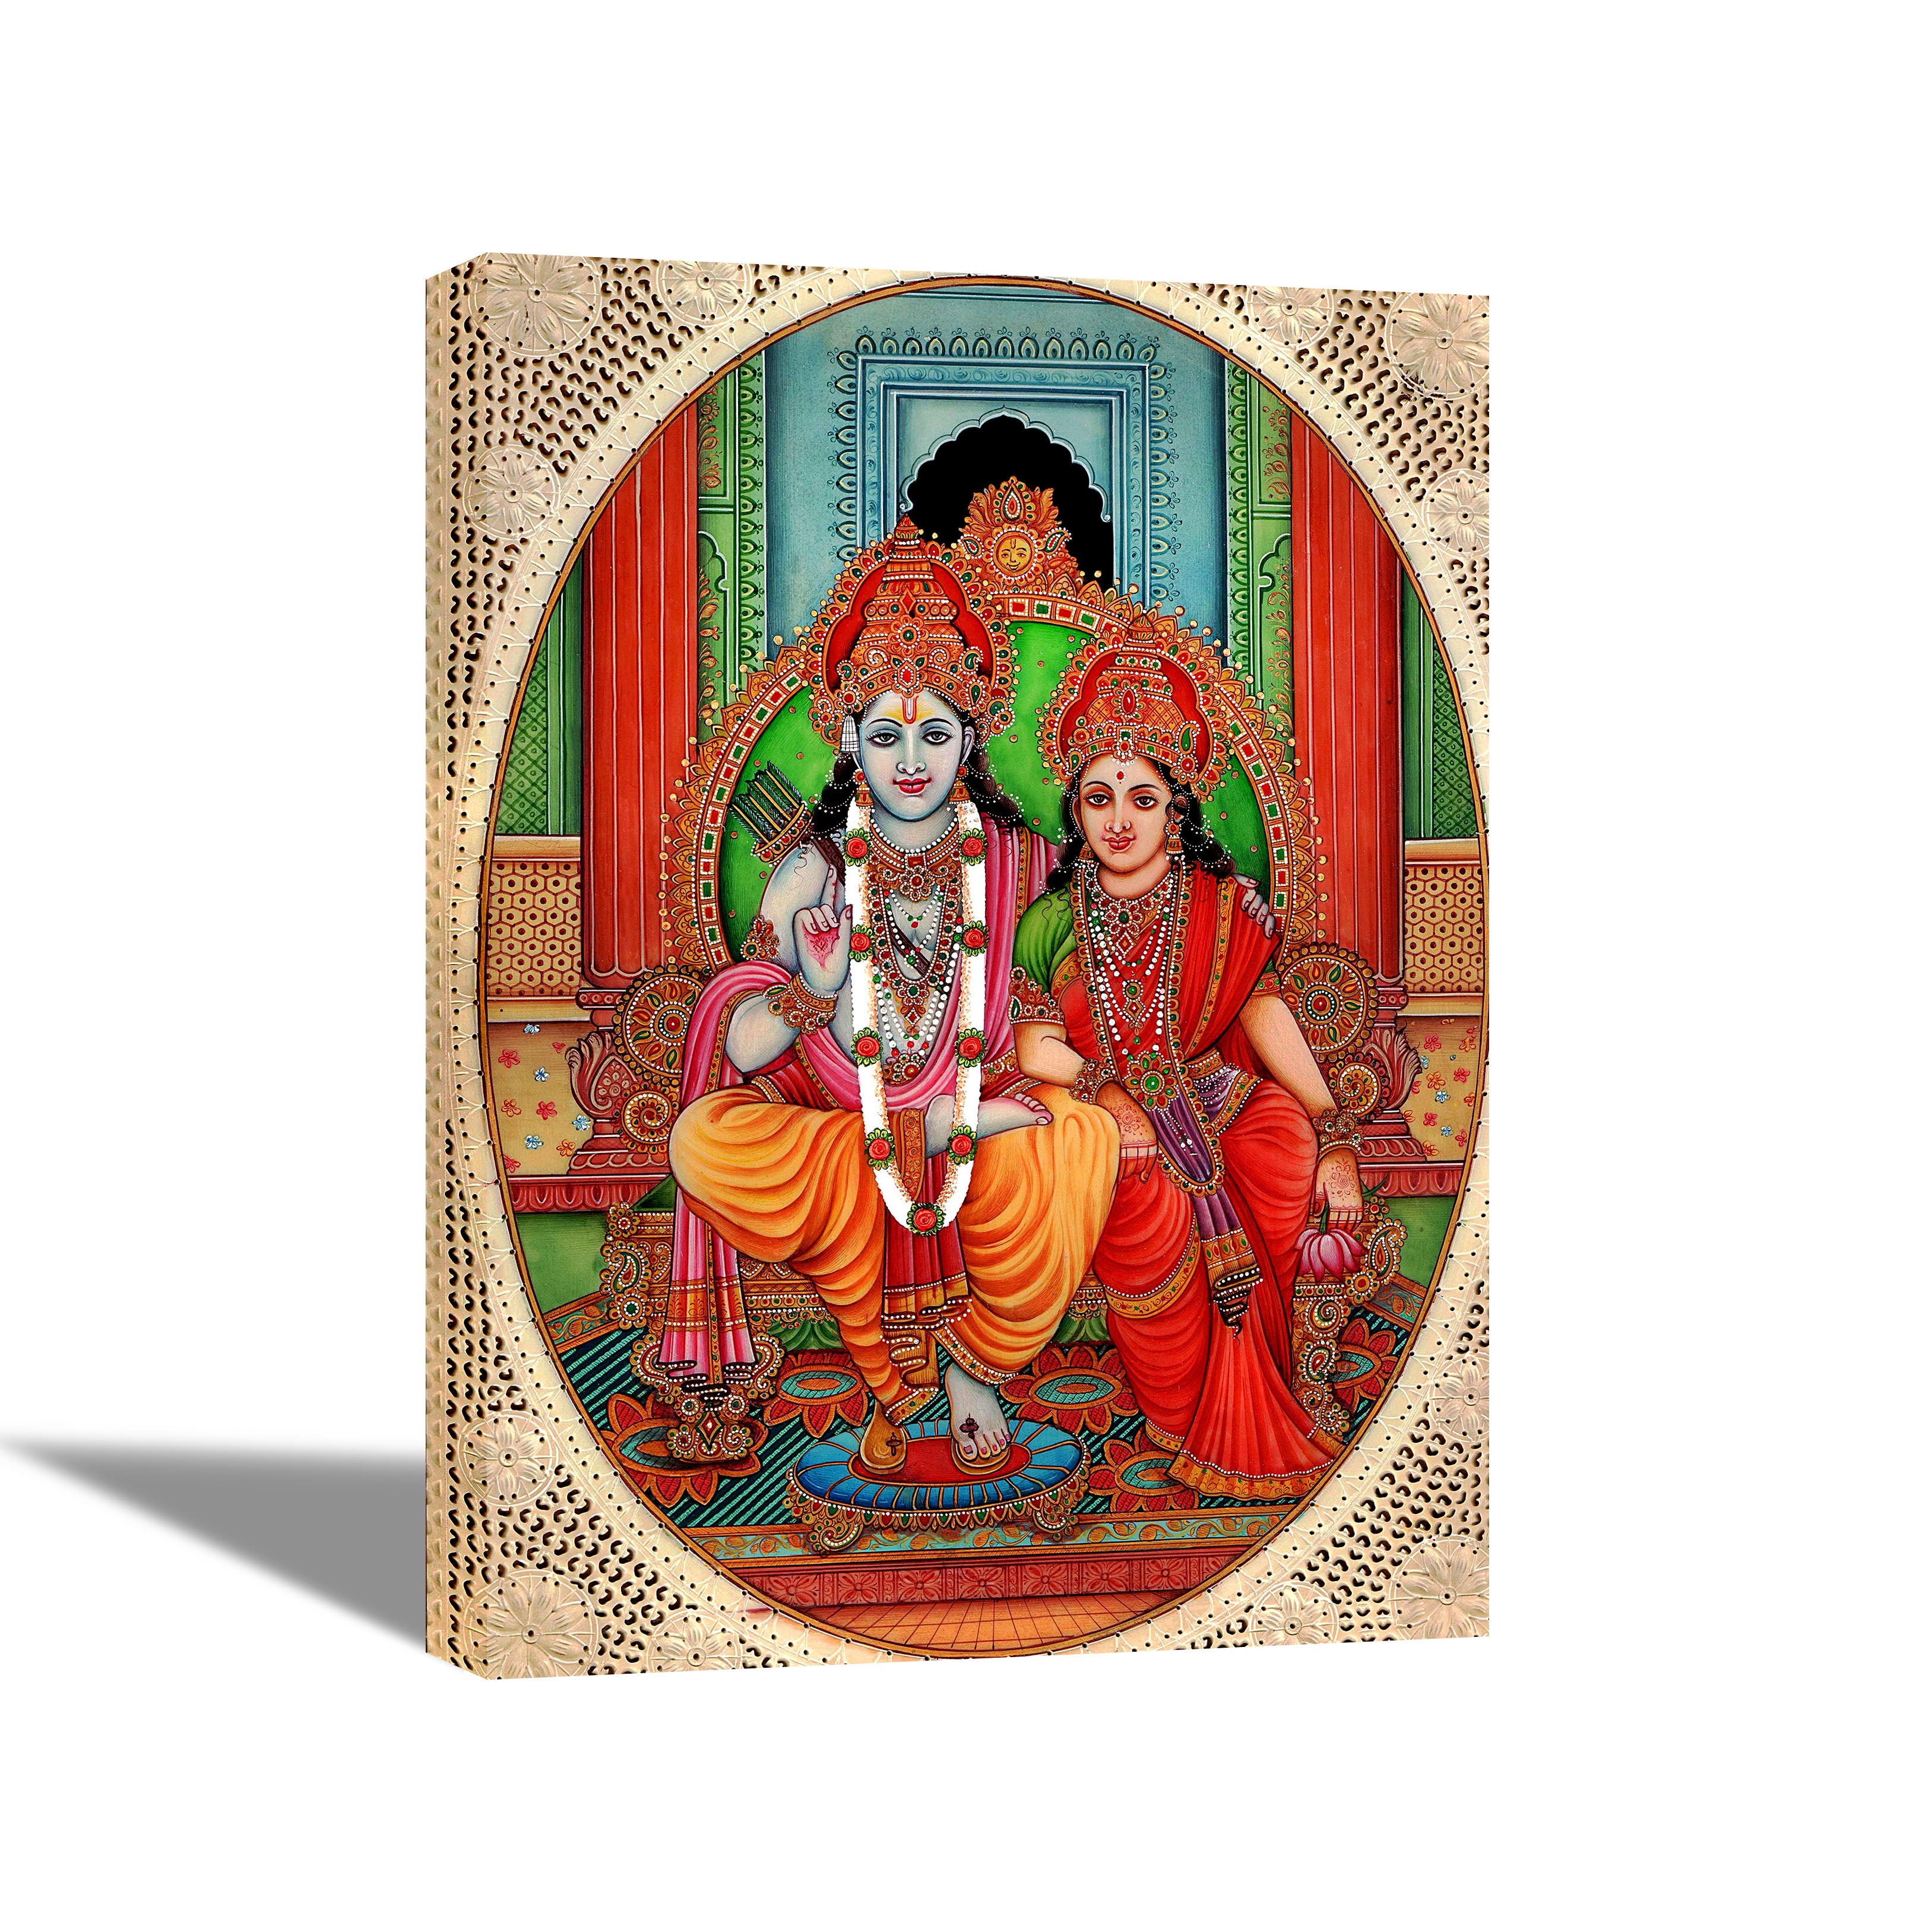 Lord Ram with Sita